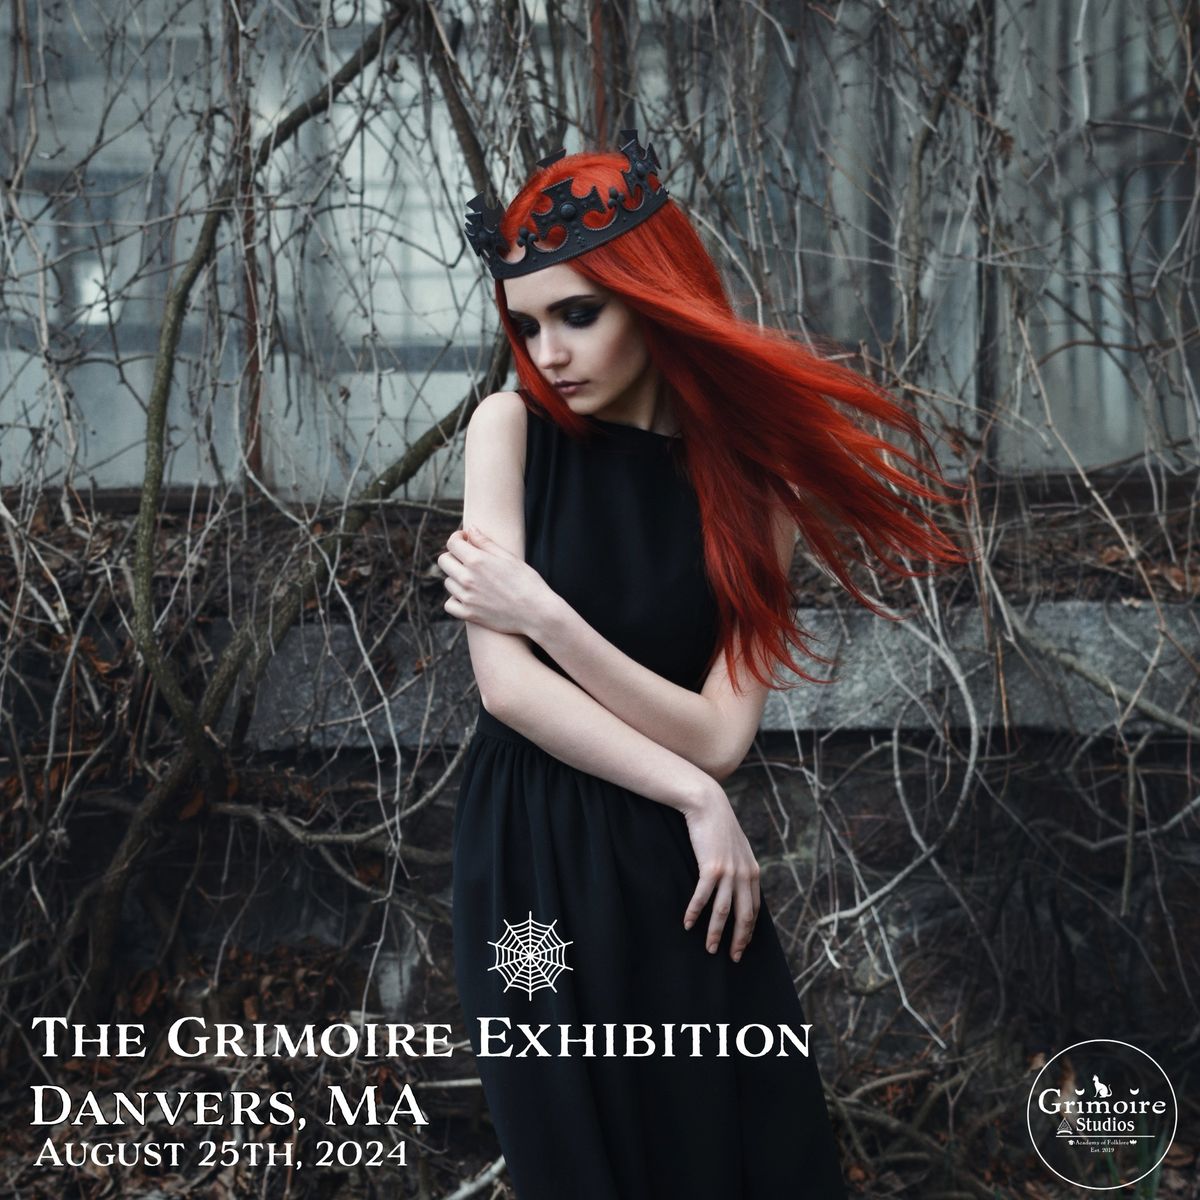 The Grimoire Exhibition (August 25, 2024) Doubletree, Danvers